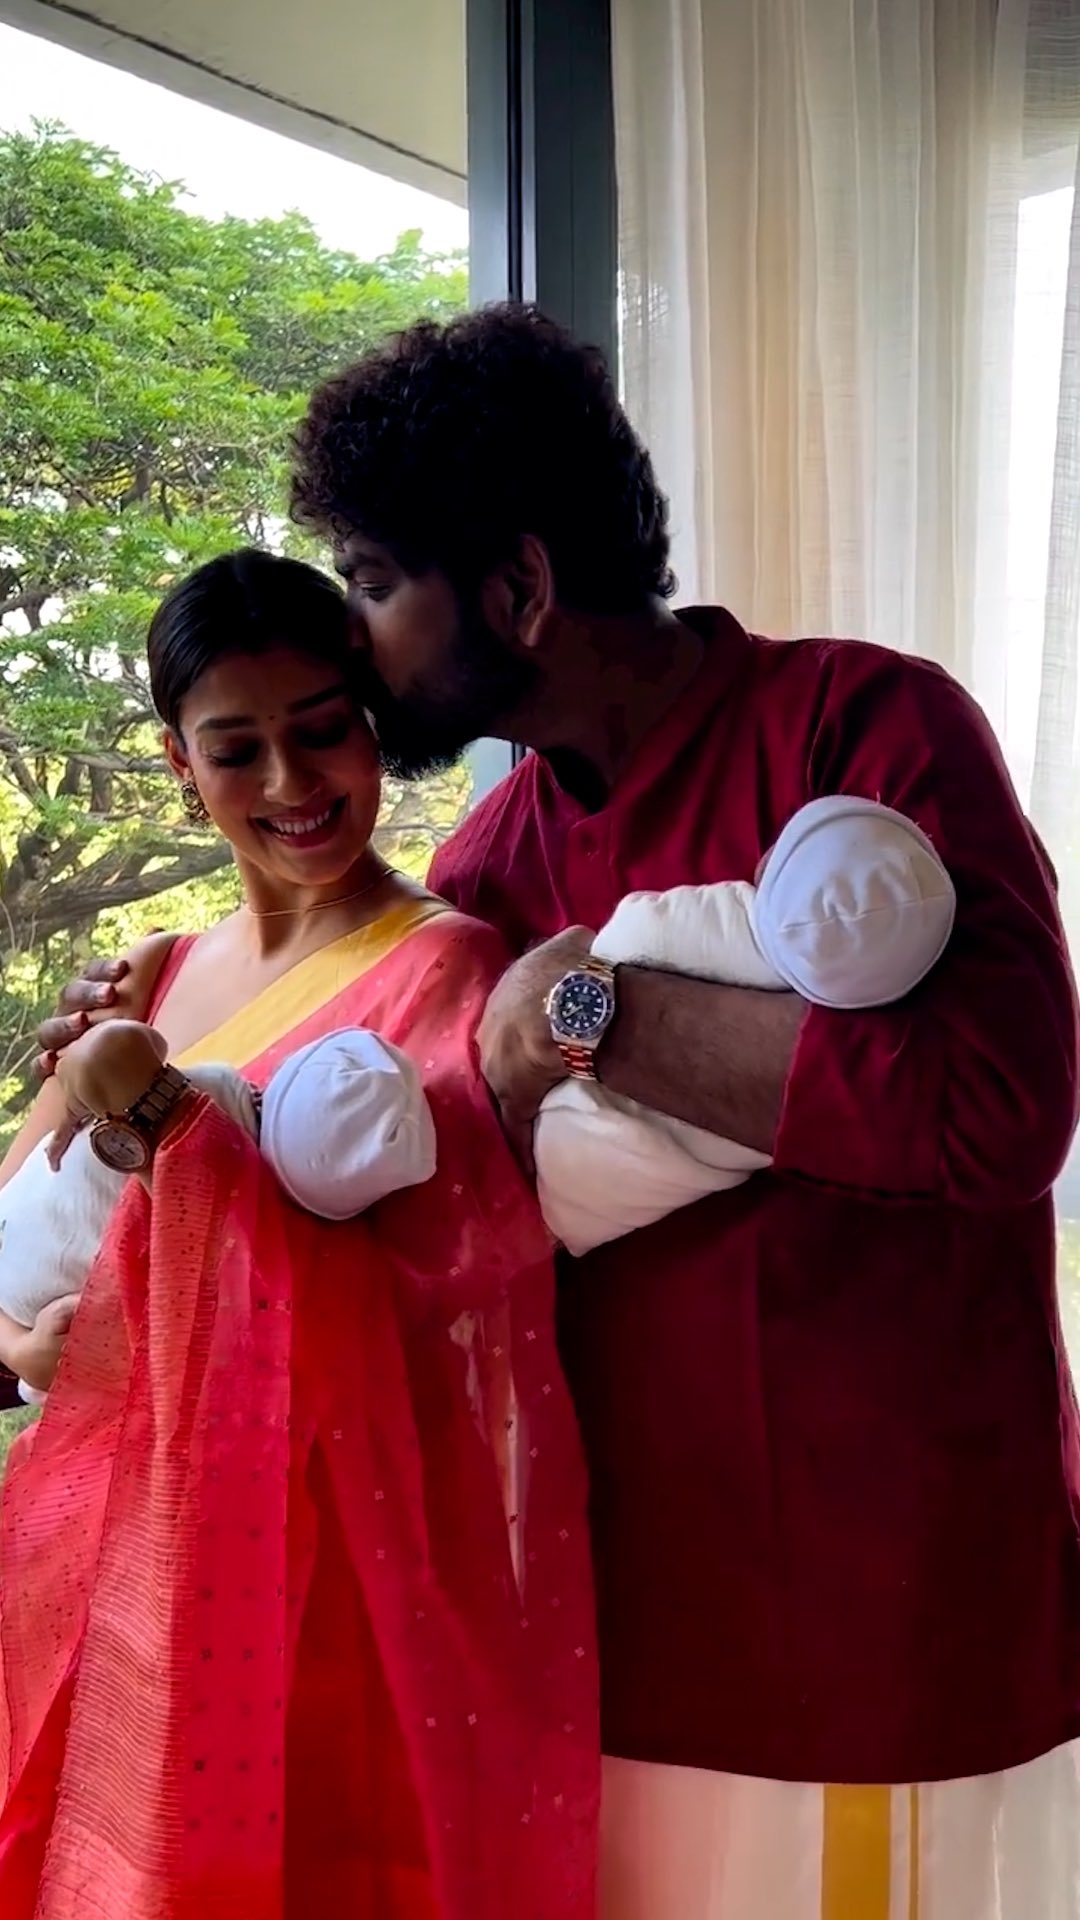 actress radhika sarathkumar met nayanthara and vignesh shivan with their babies photo getting viral